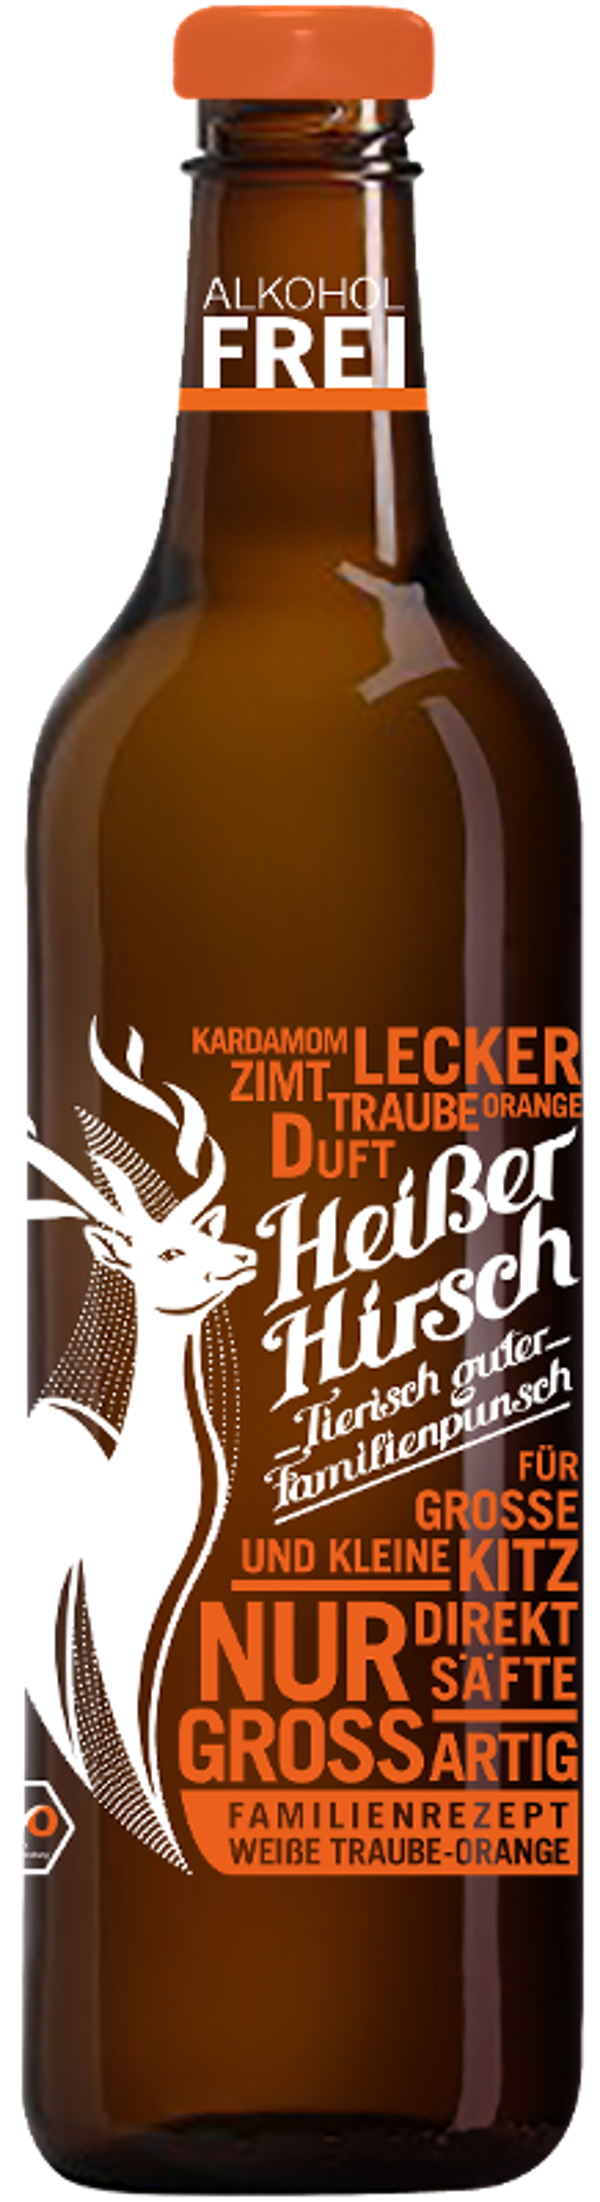 Produktfoto zu Heißer Hirsch Punsch Orange (alkoholfrei)